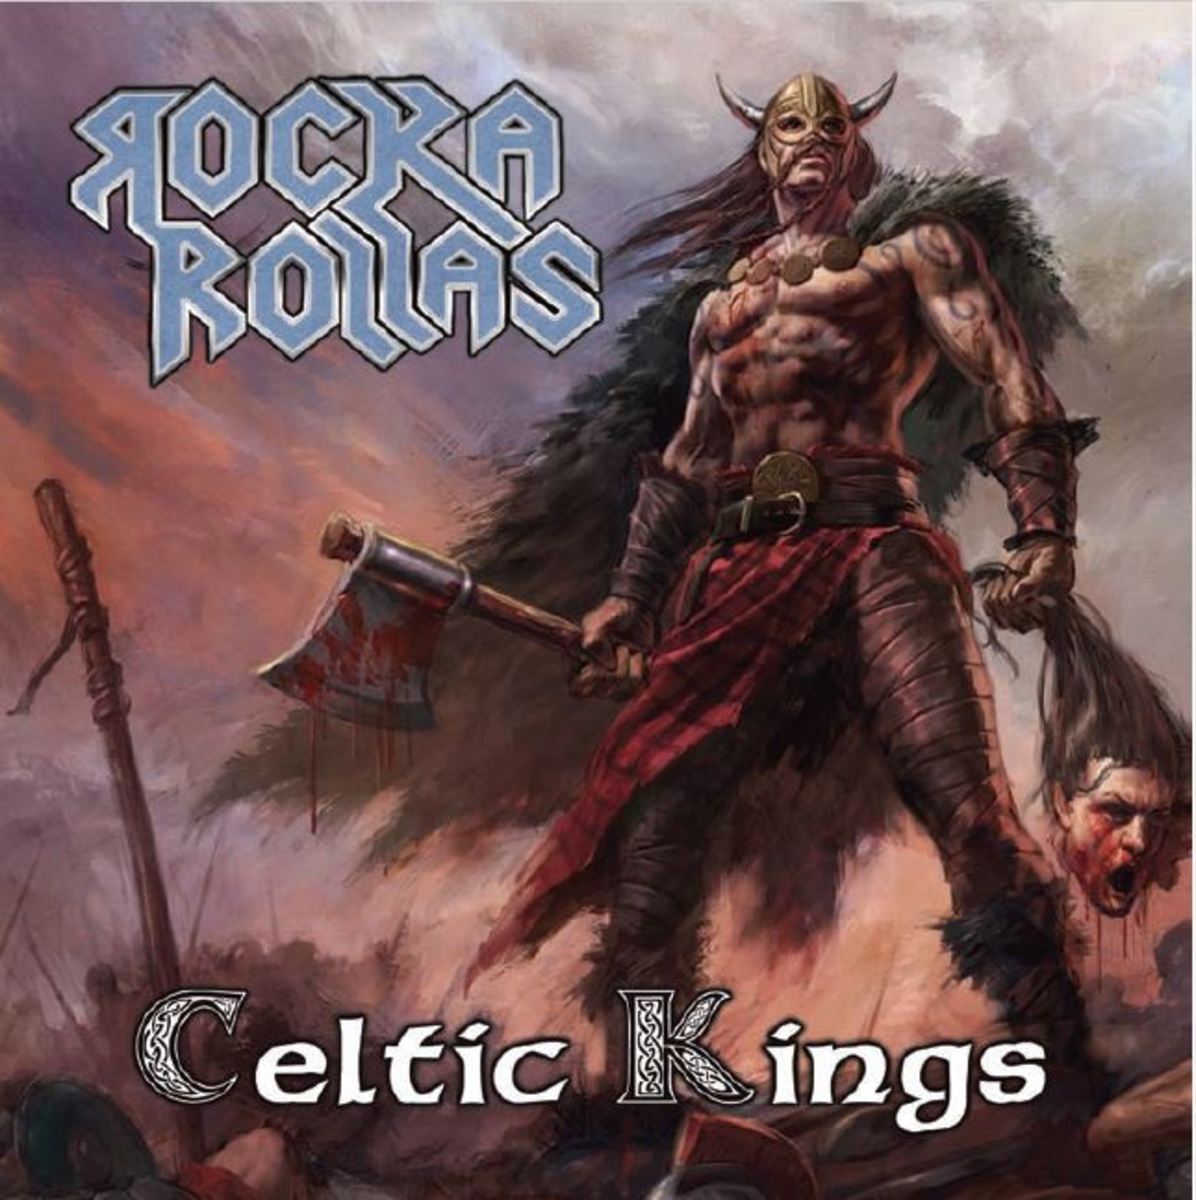 "Celtic Kings" album cover art